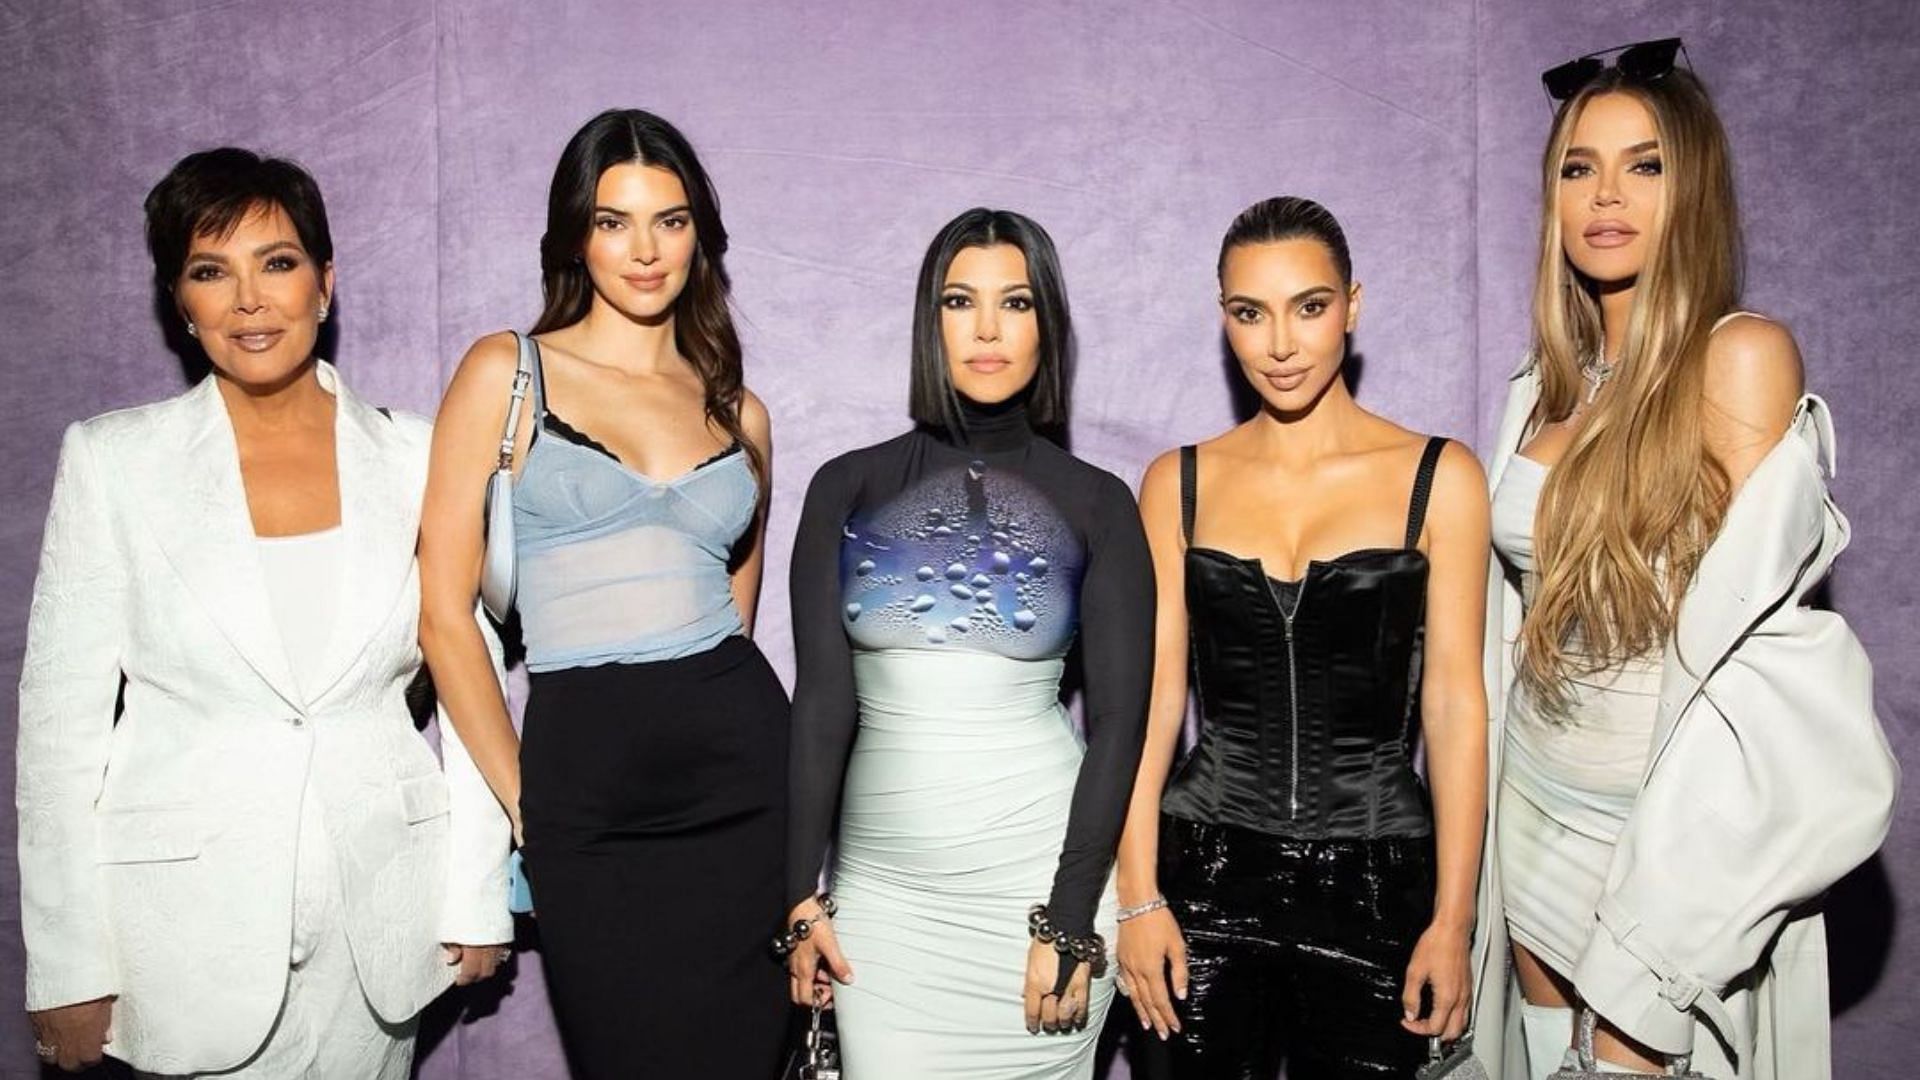 The Kardashians Season 2 is set to air a brand new episode on Thursday